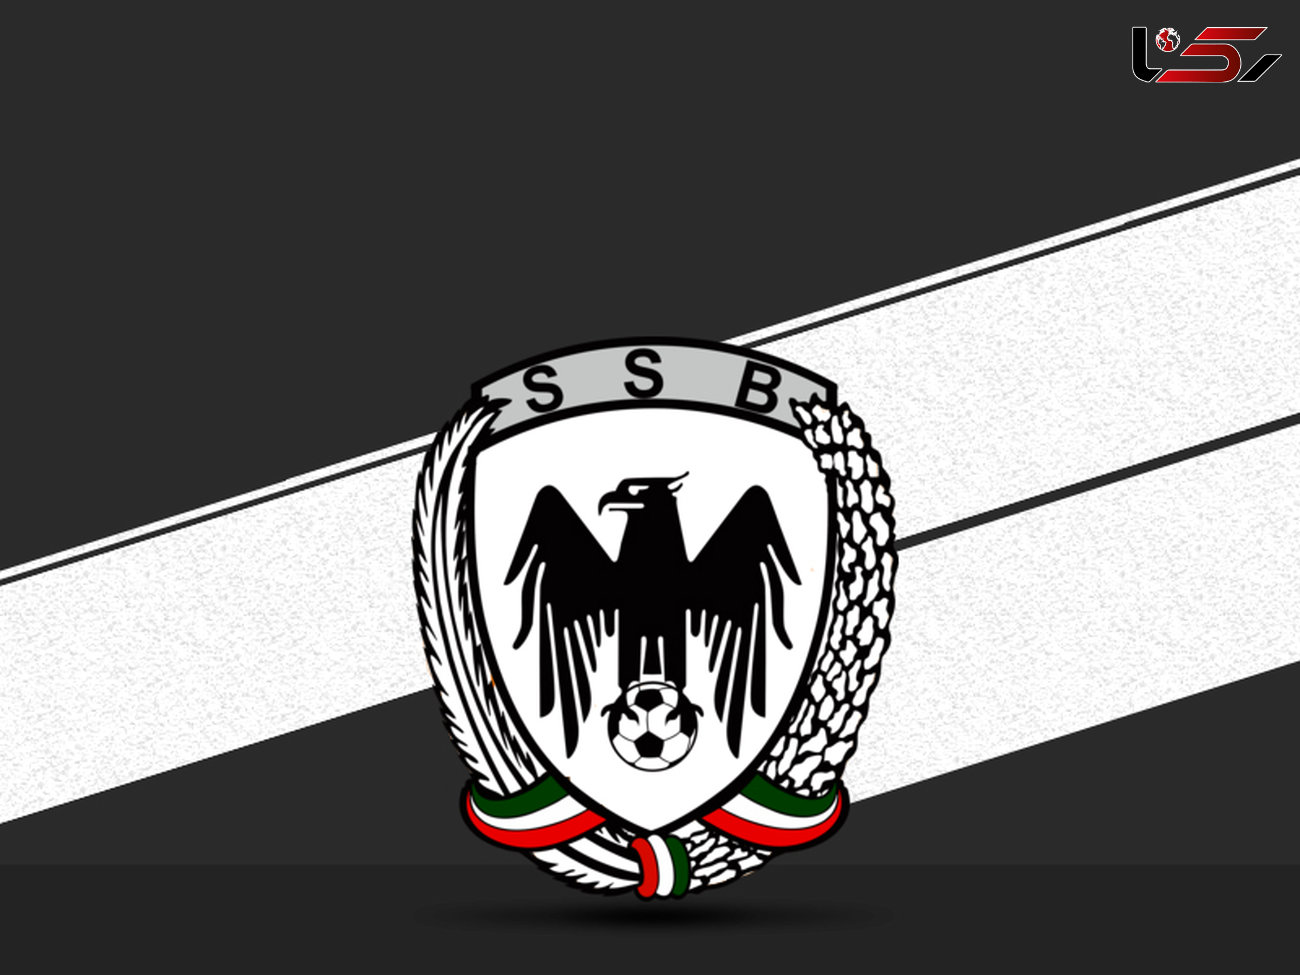 کنایه عجیب باشگاه شاهین بوشهر به استقلال پس از دربی